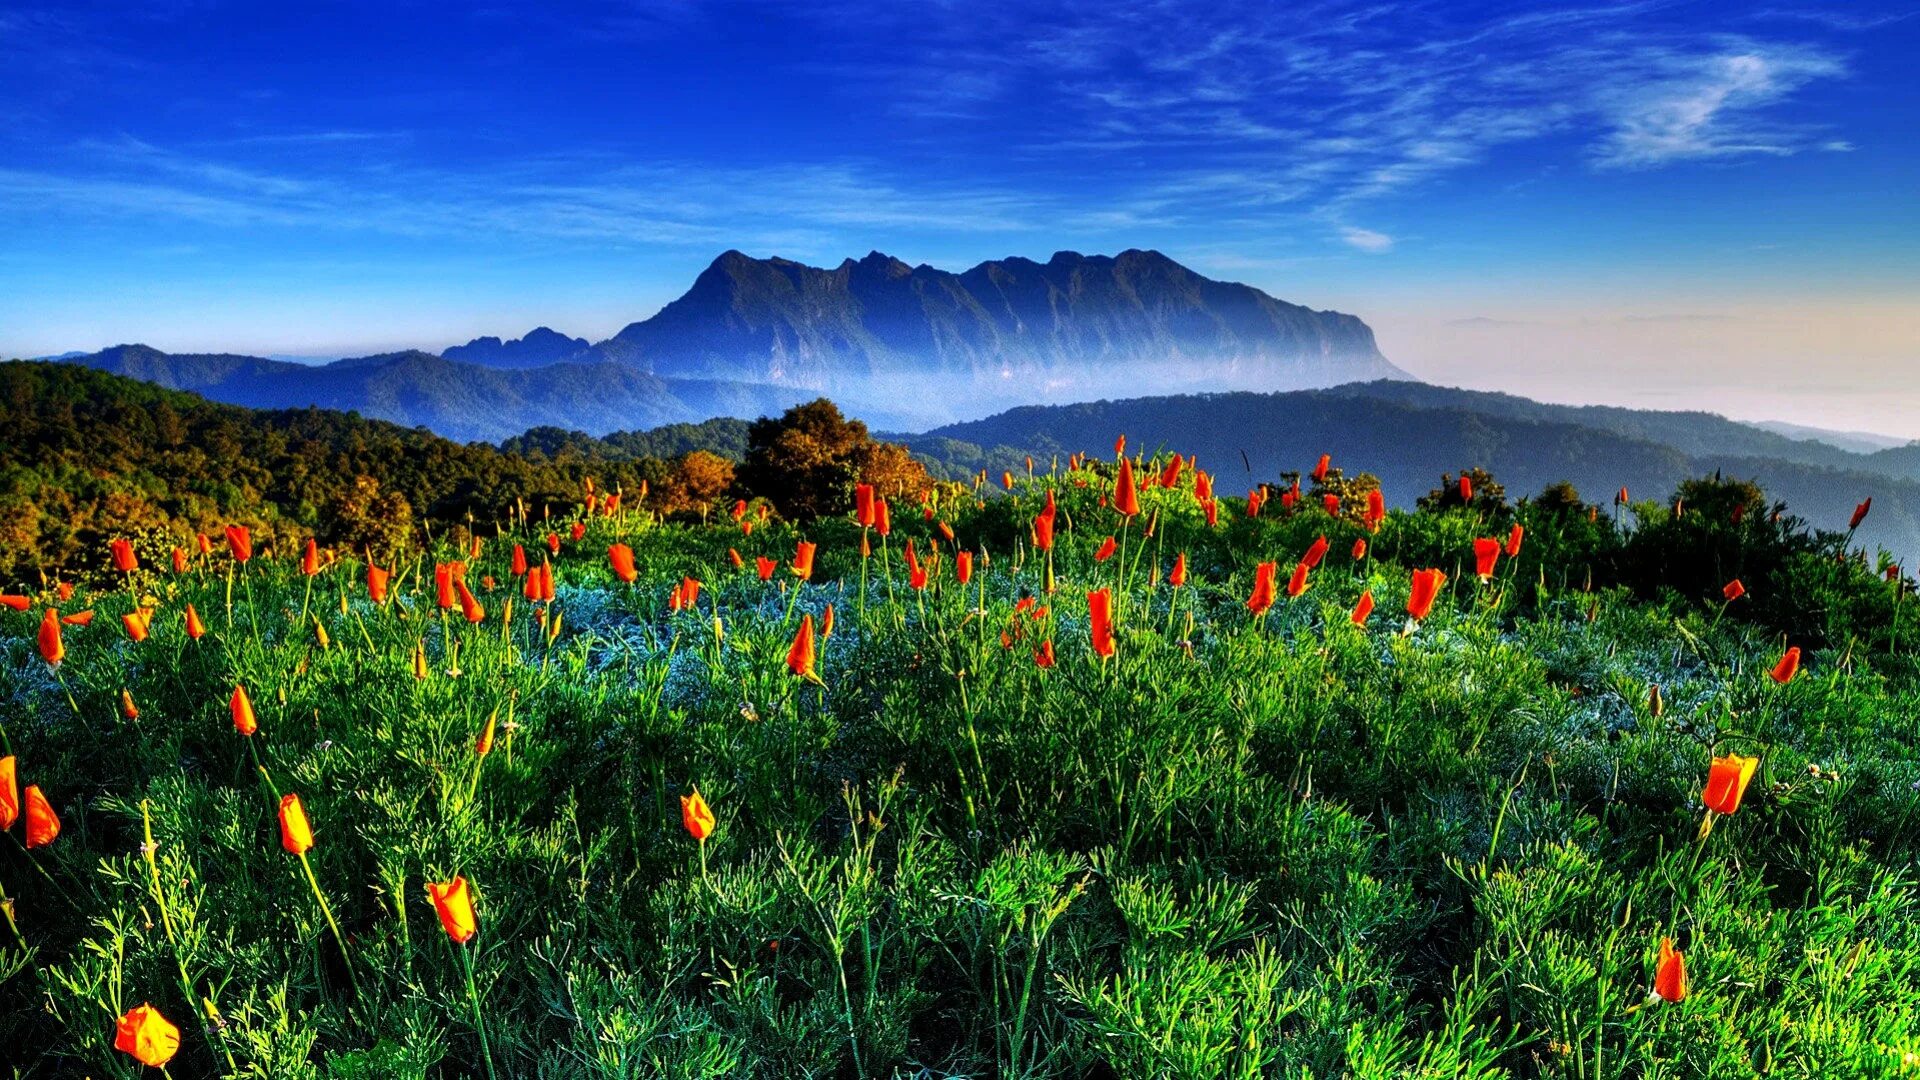 Обои на рабочий стол горы весной. Долина Мак Деира. Чиангмай горы. Красота природы.